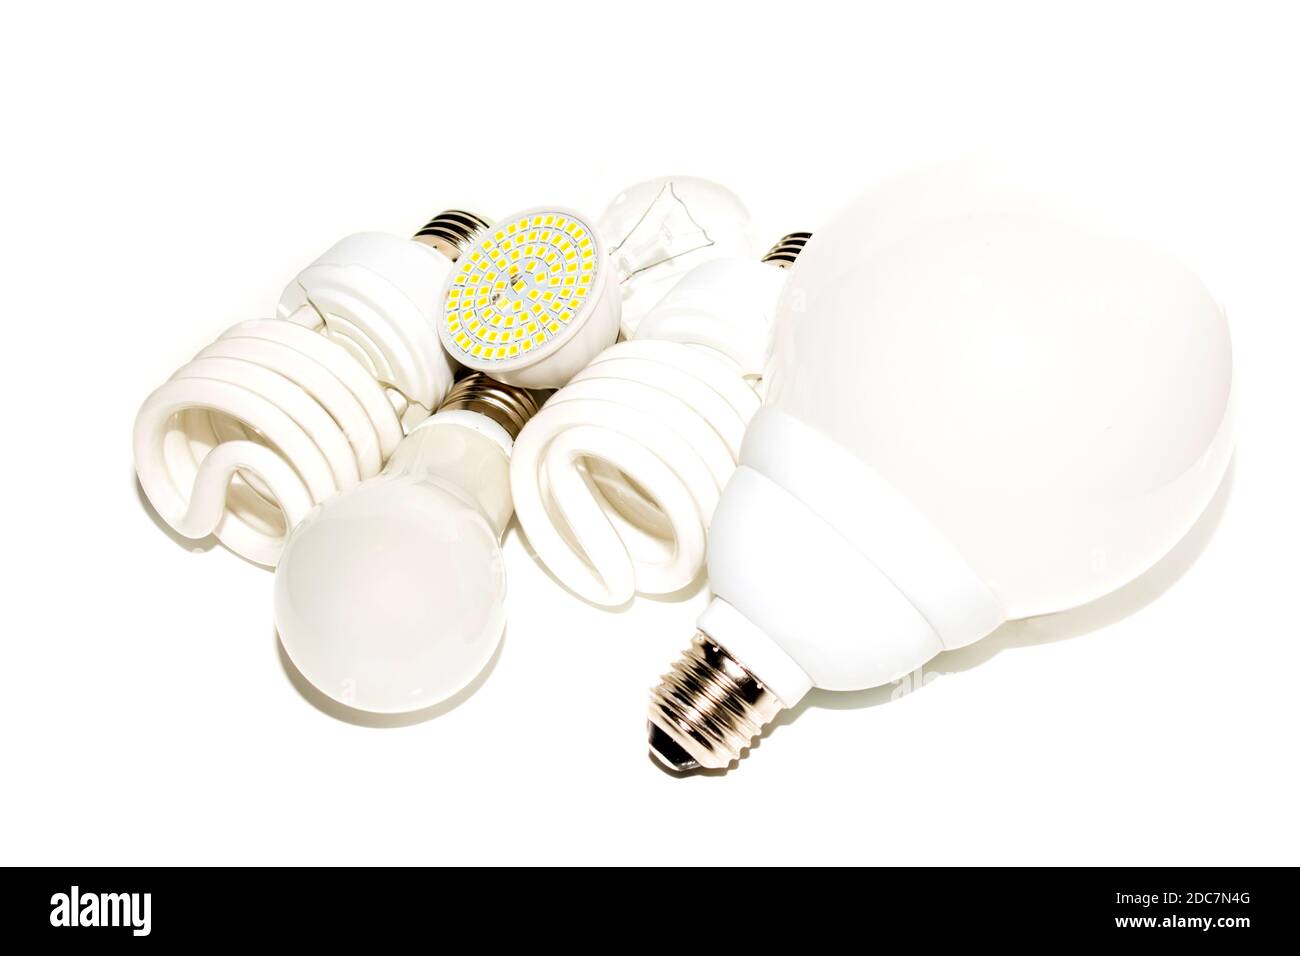 Mehrere verschiedene LED-Lampen und Kompaktleuchtstofflampen mit dem Größe des männlichen Schraubsockels E27 auf einer Leuchte Hintergrund Stockfoto